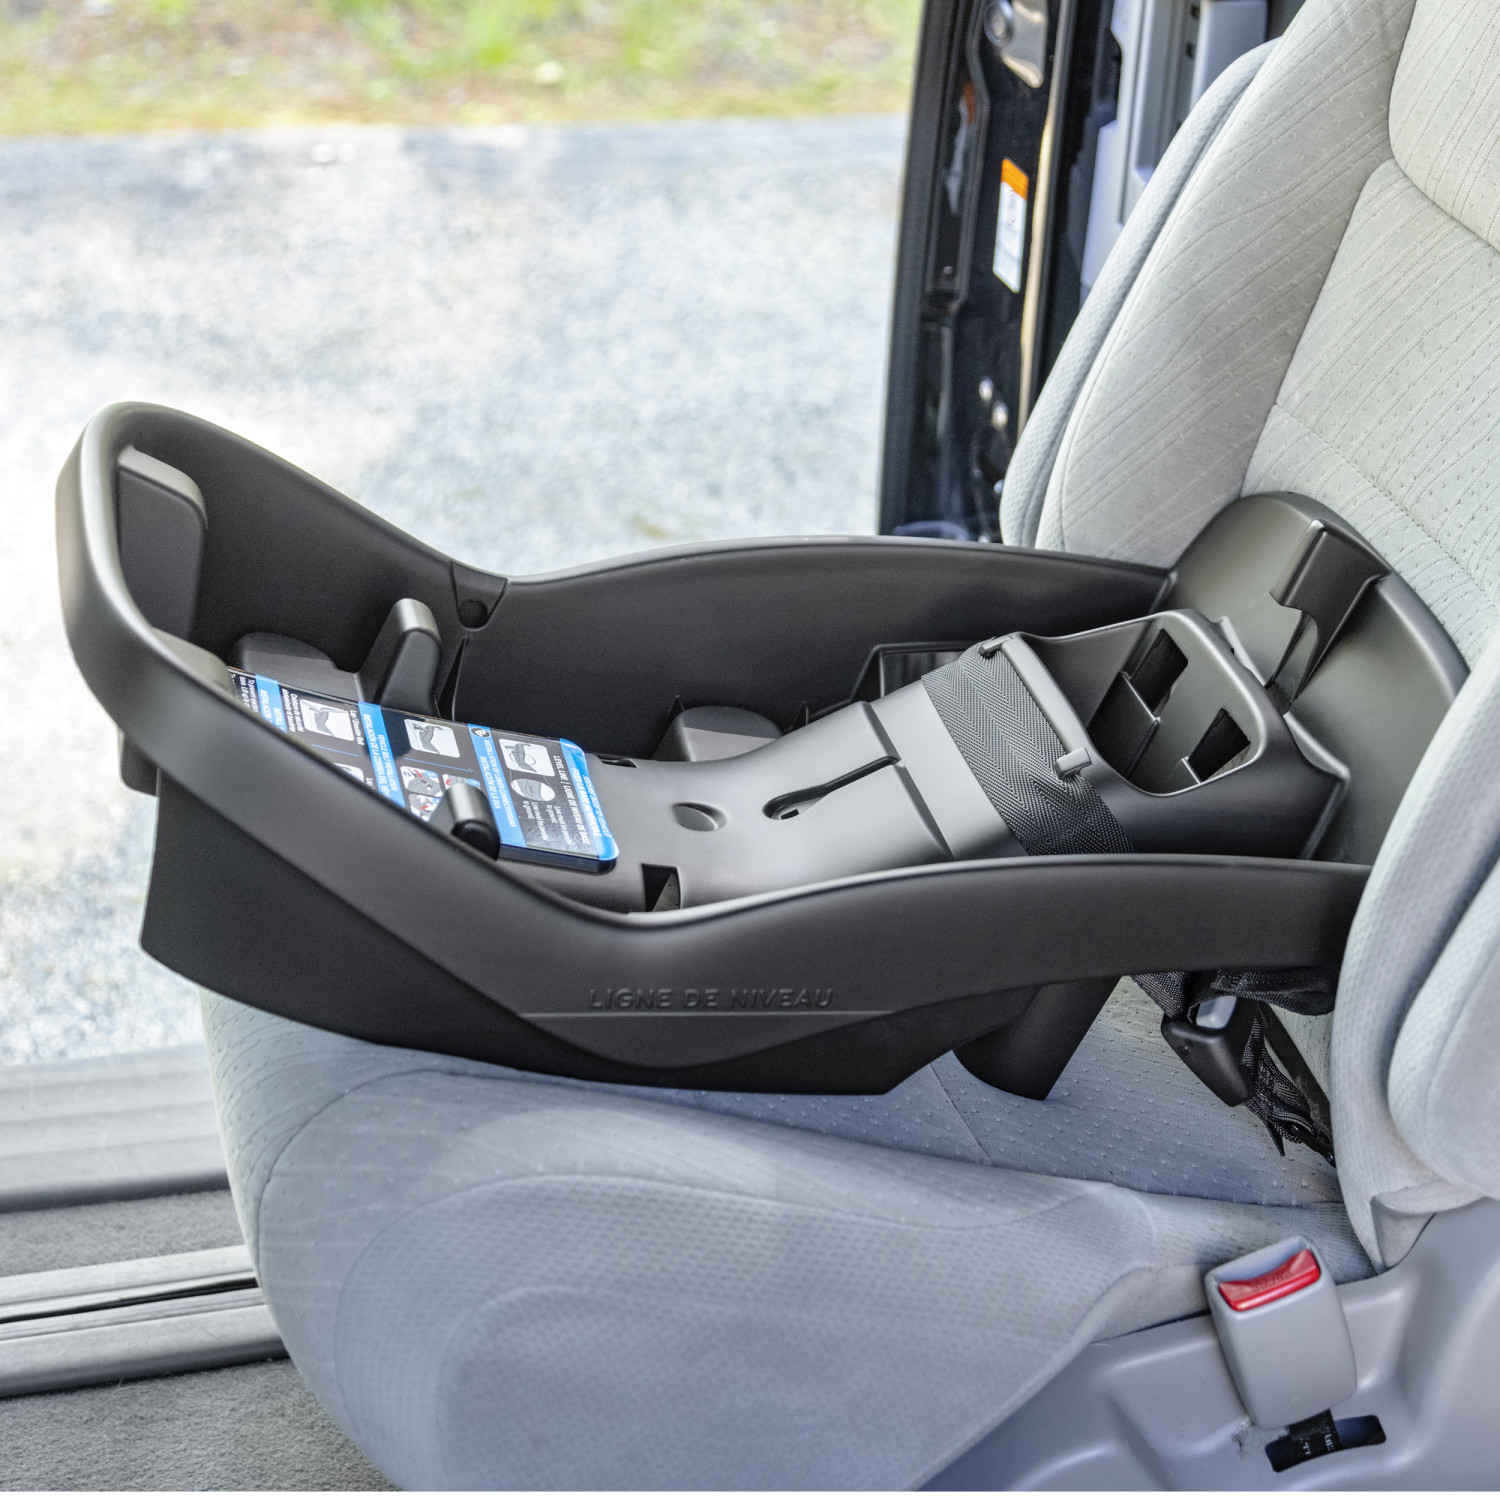 Evenflo NurtureMax Infant Car Seat, Delilah Pink - image 3 of 16